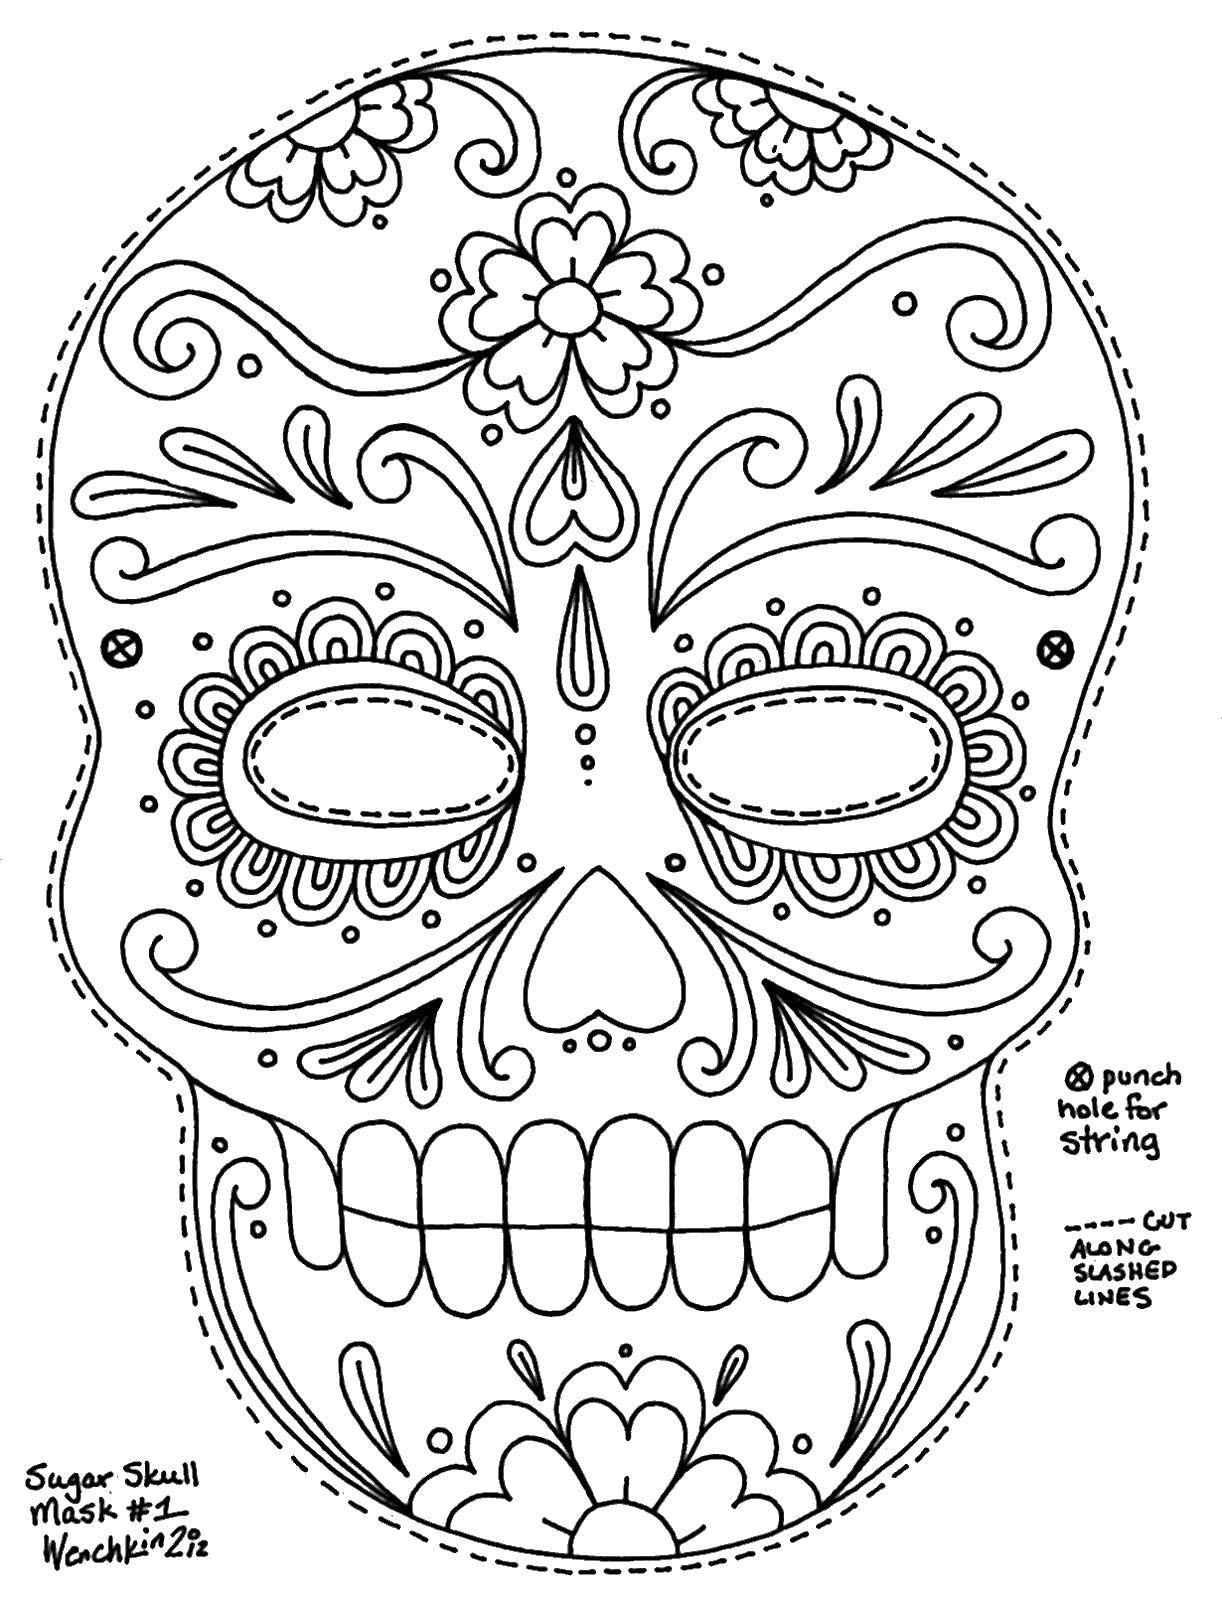 Название: Раскраска Разукрашенный череп. Категория: Череп. Теги: череп, цветы, узоры.